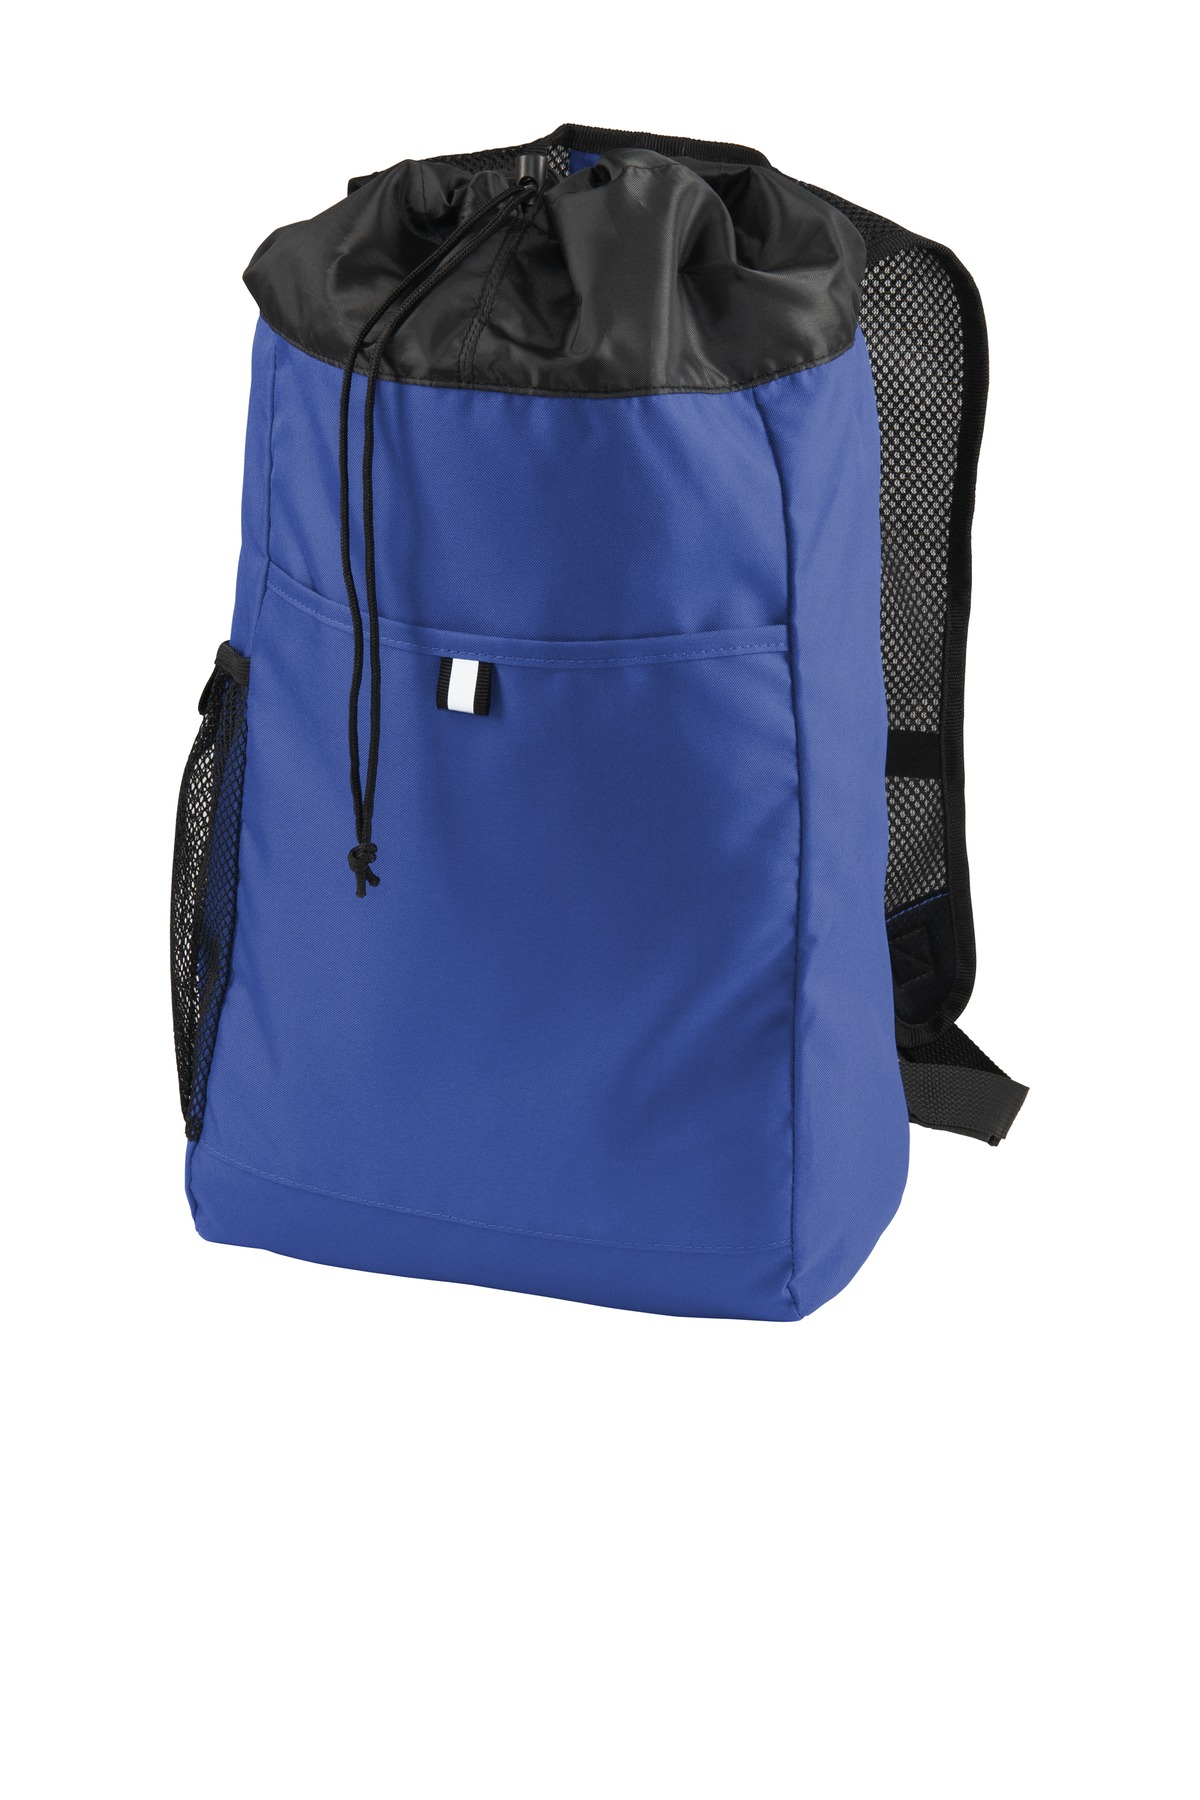 Port Authority  Hybrid Backpack. BG211